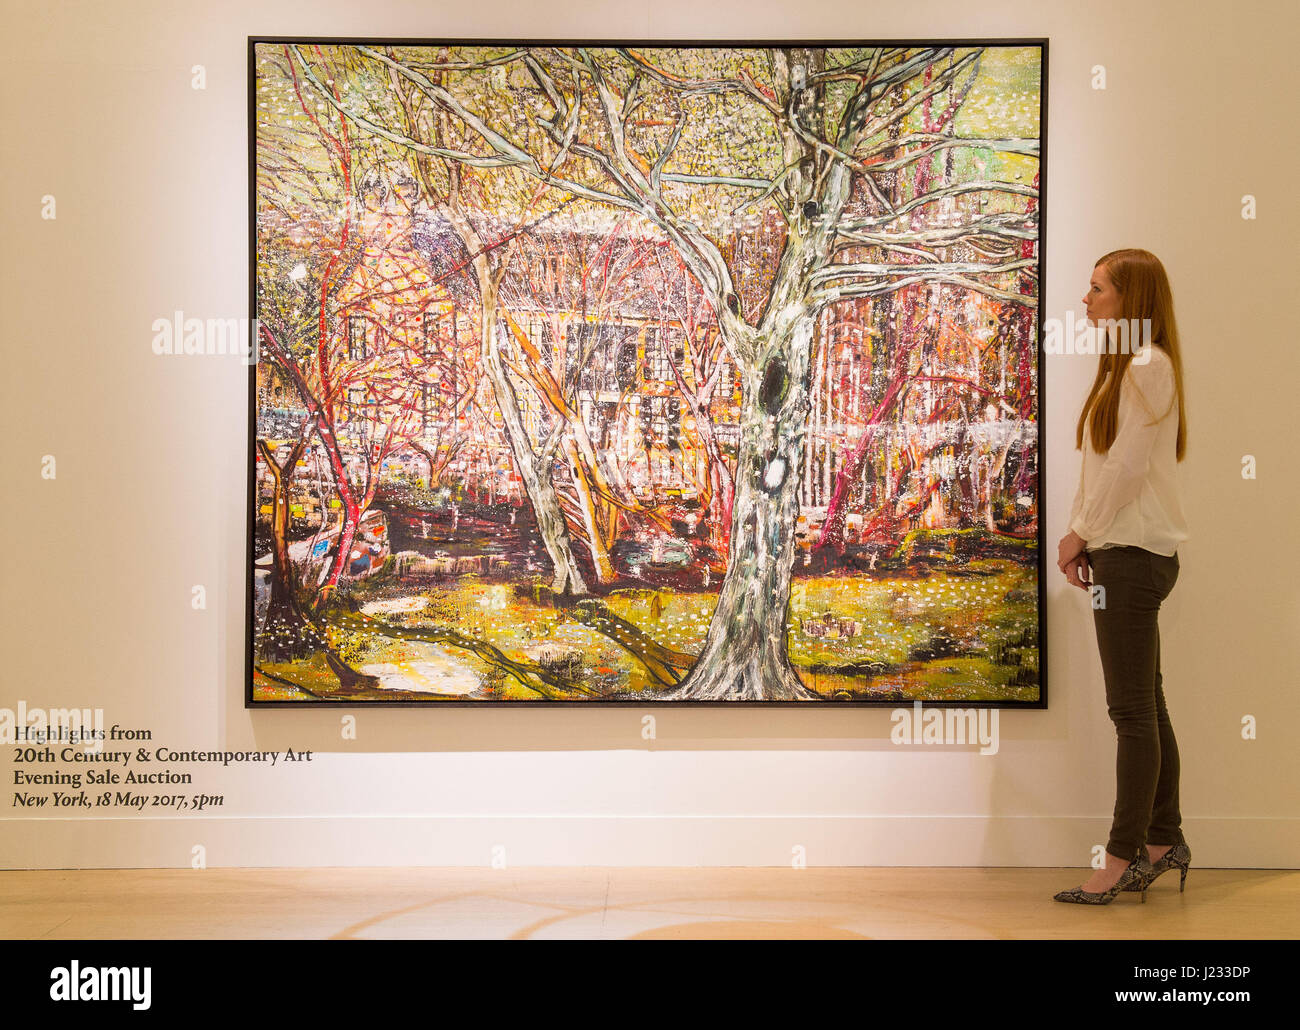 Eine Frau betrachtet Peter Doigs Gemälde Rosedale im Phillips-Salon im Zentrum Londons, bevor es vom Auktionshaus in ihrem Abendverkauf von 20th Century & Contemporary Art in New York verkauft wird, der schätzungsweise 25 Millionen US-Dollar einbringt. Stockfoto